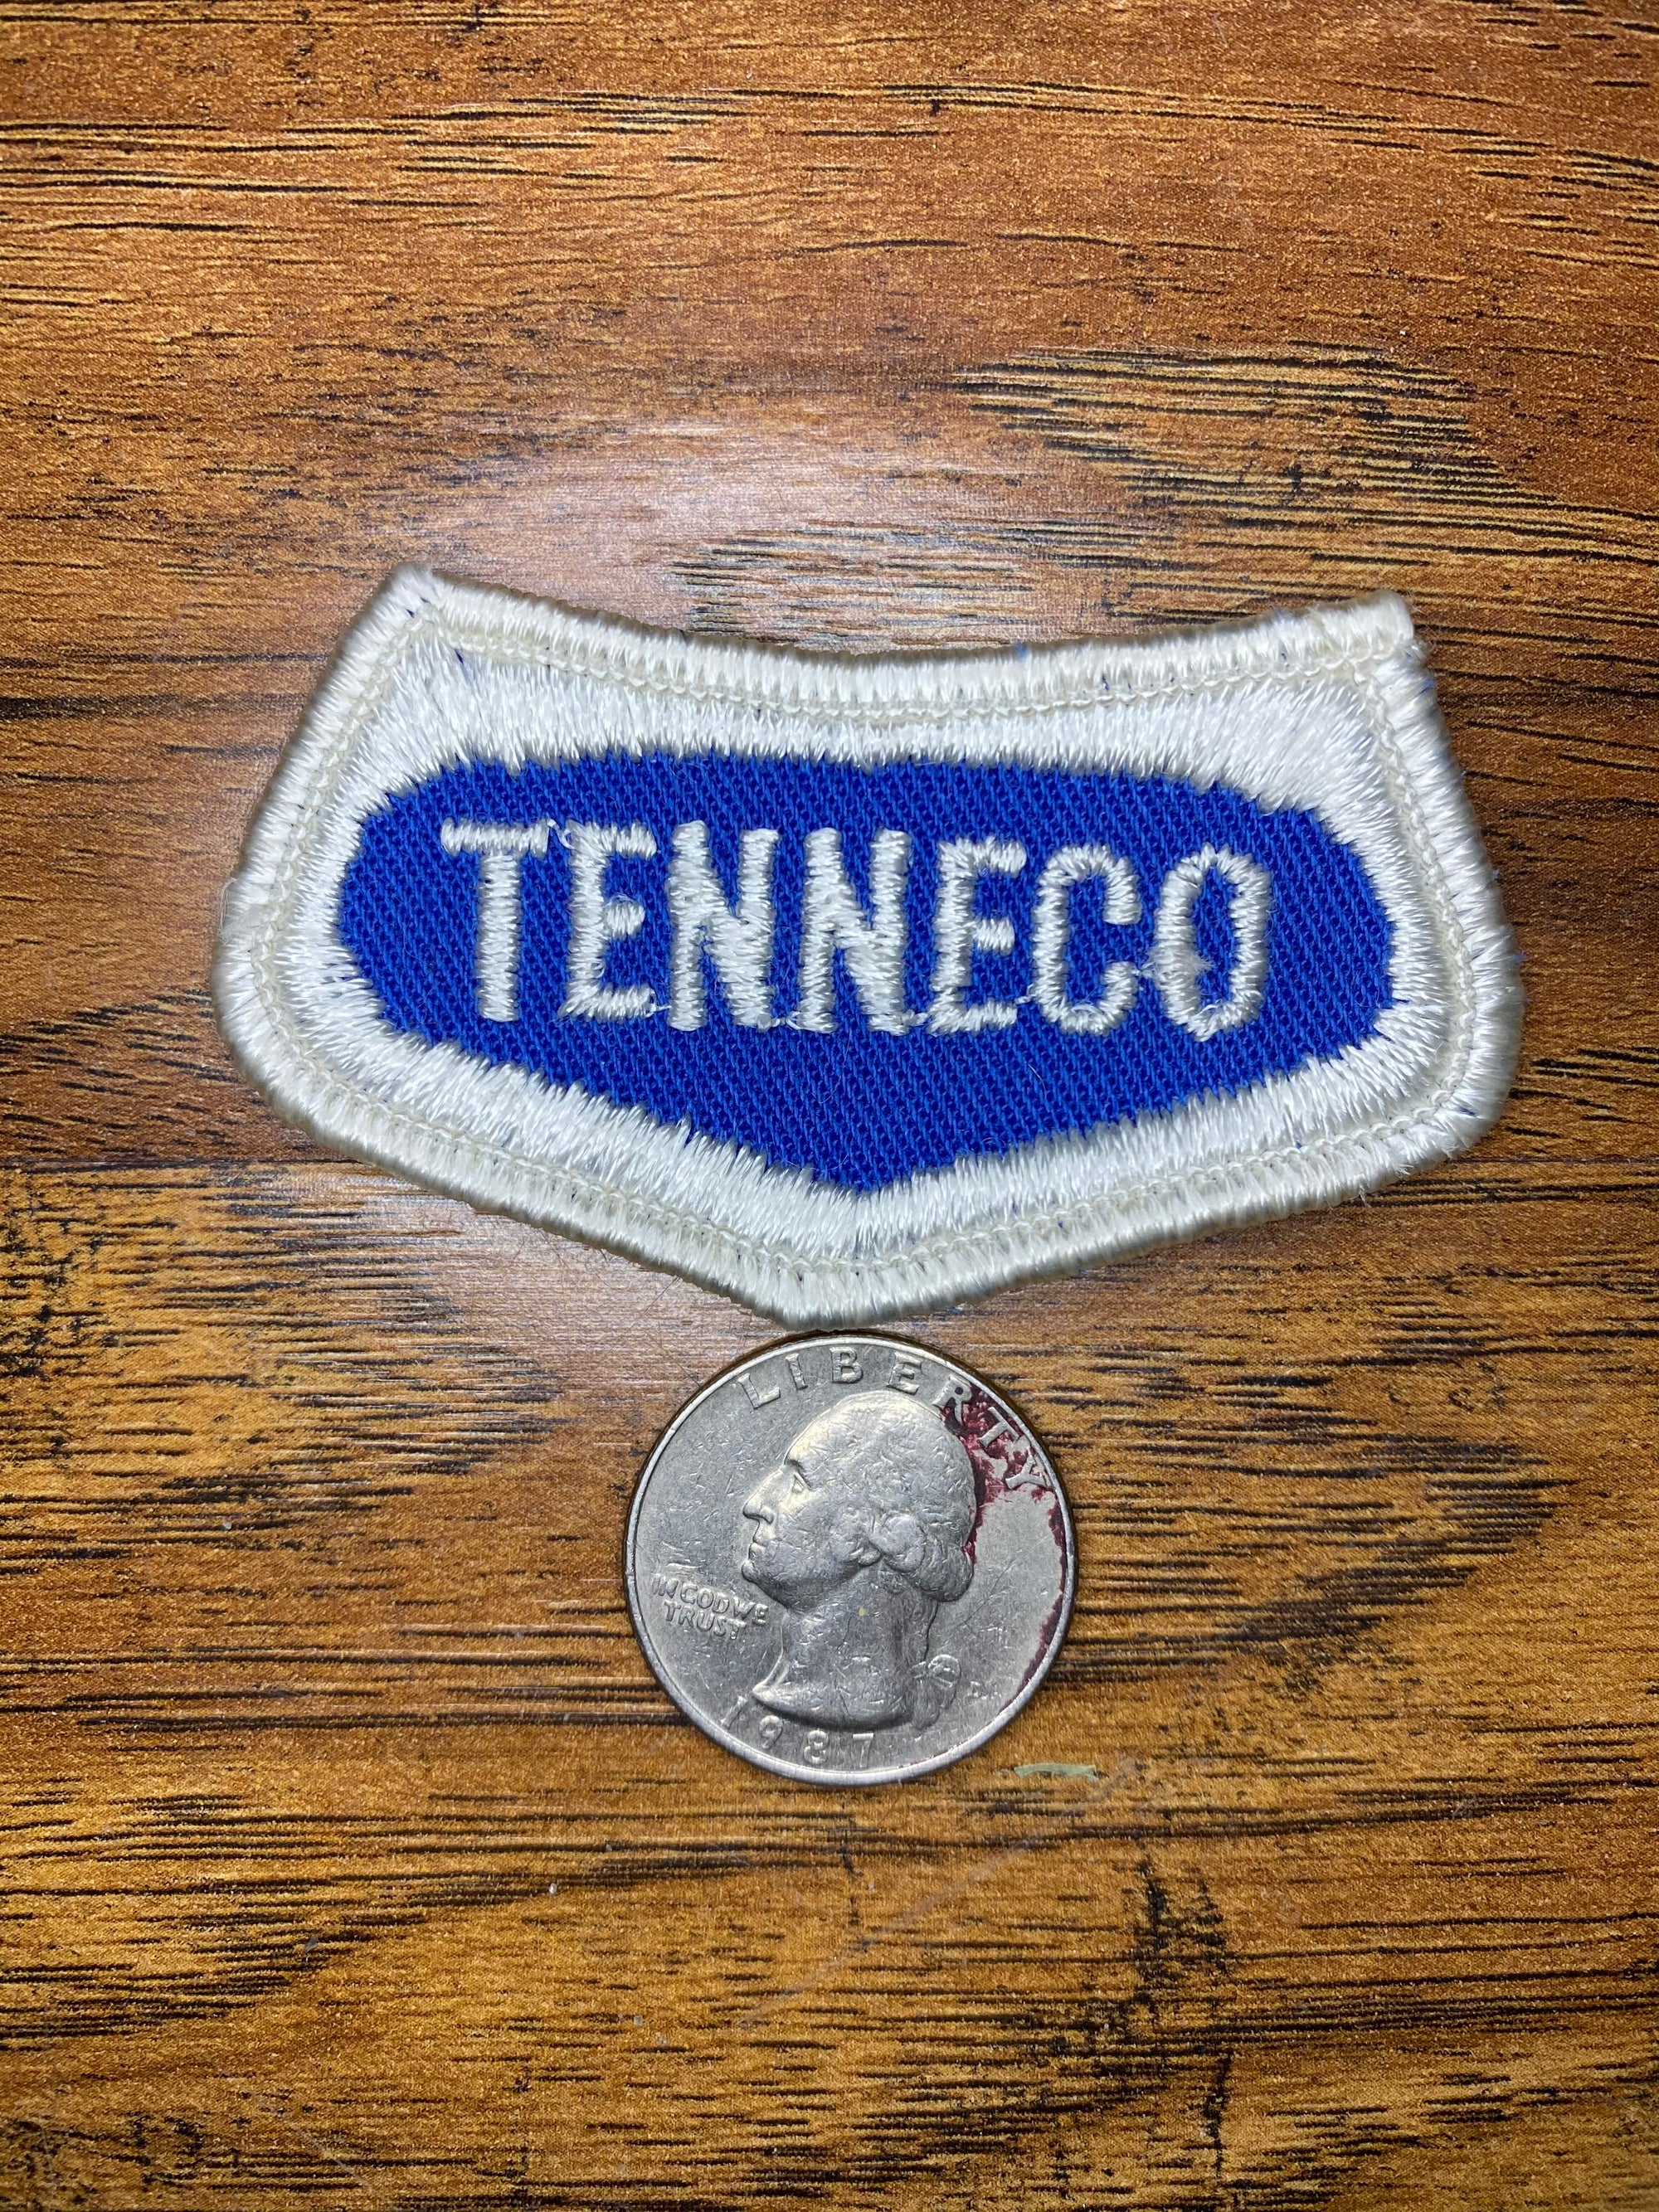 Vintage Tenneco